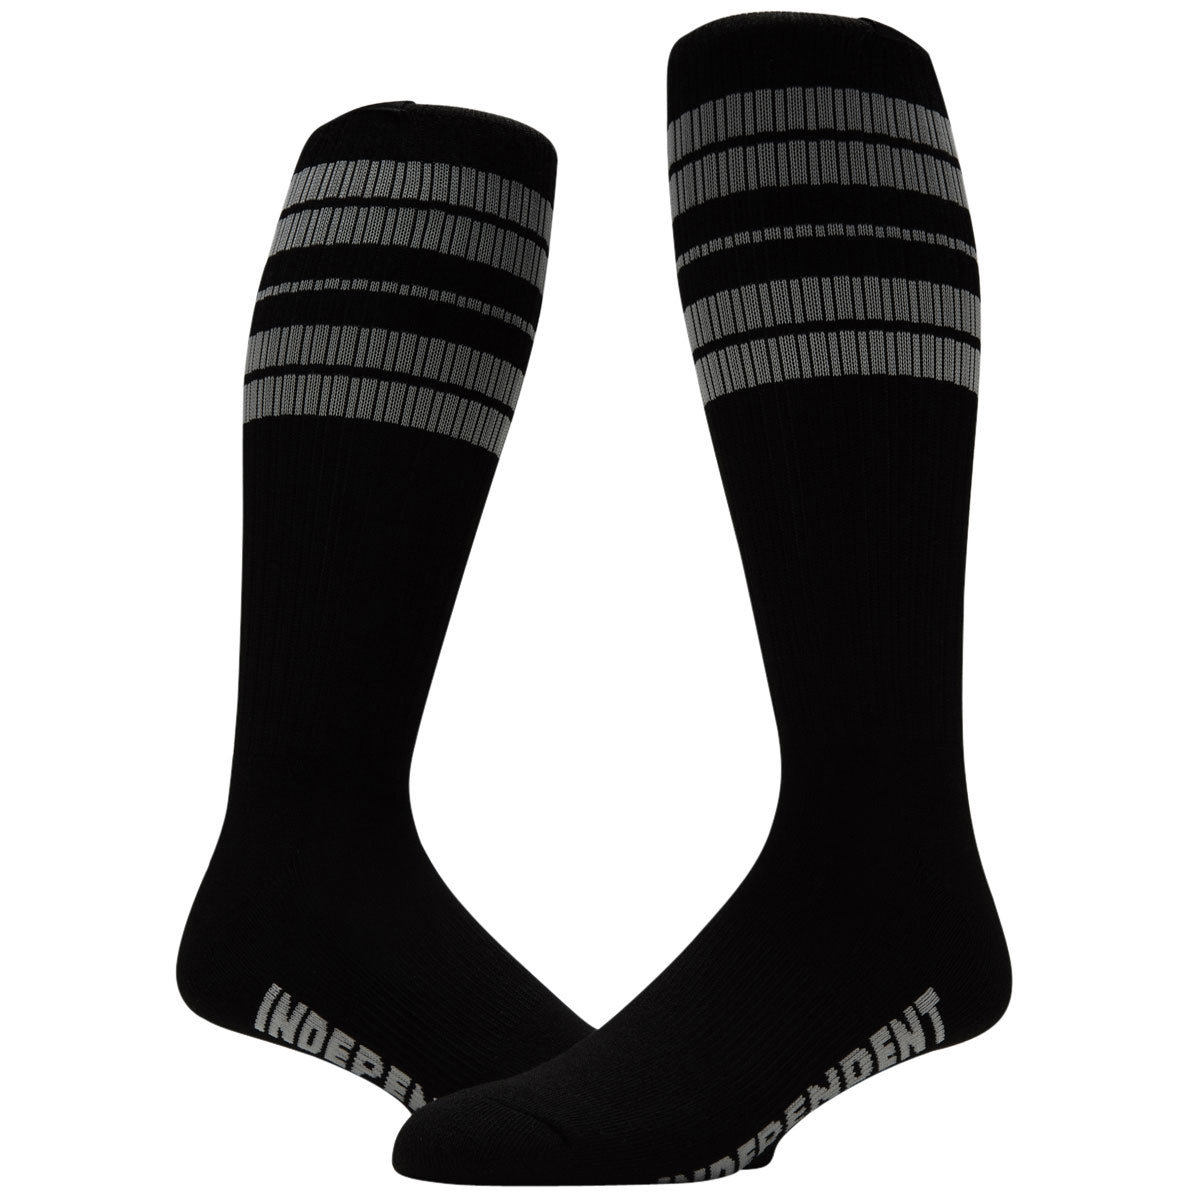 Independent Osage Crew Socks - Black/Grey image 2